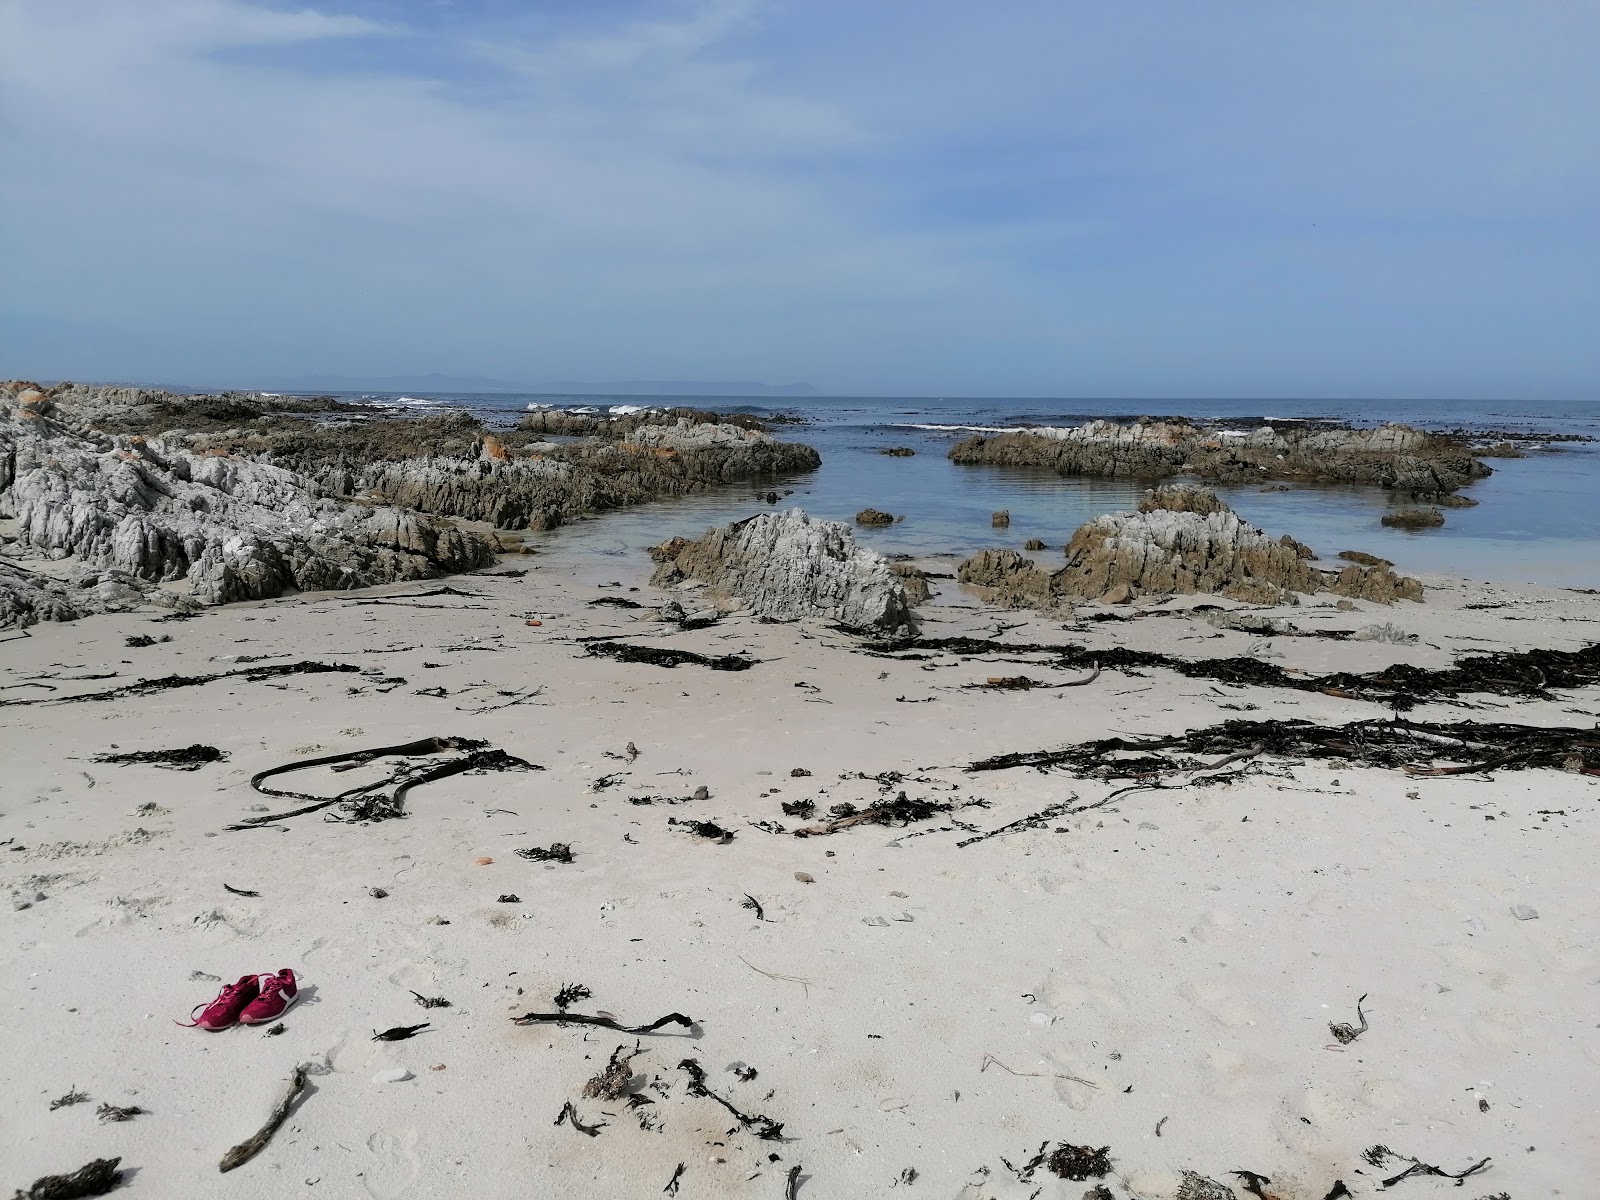 Breakfast Bay beach'in fotoğrafı parlak kum ve kayalar yüzey ile